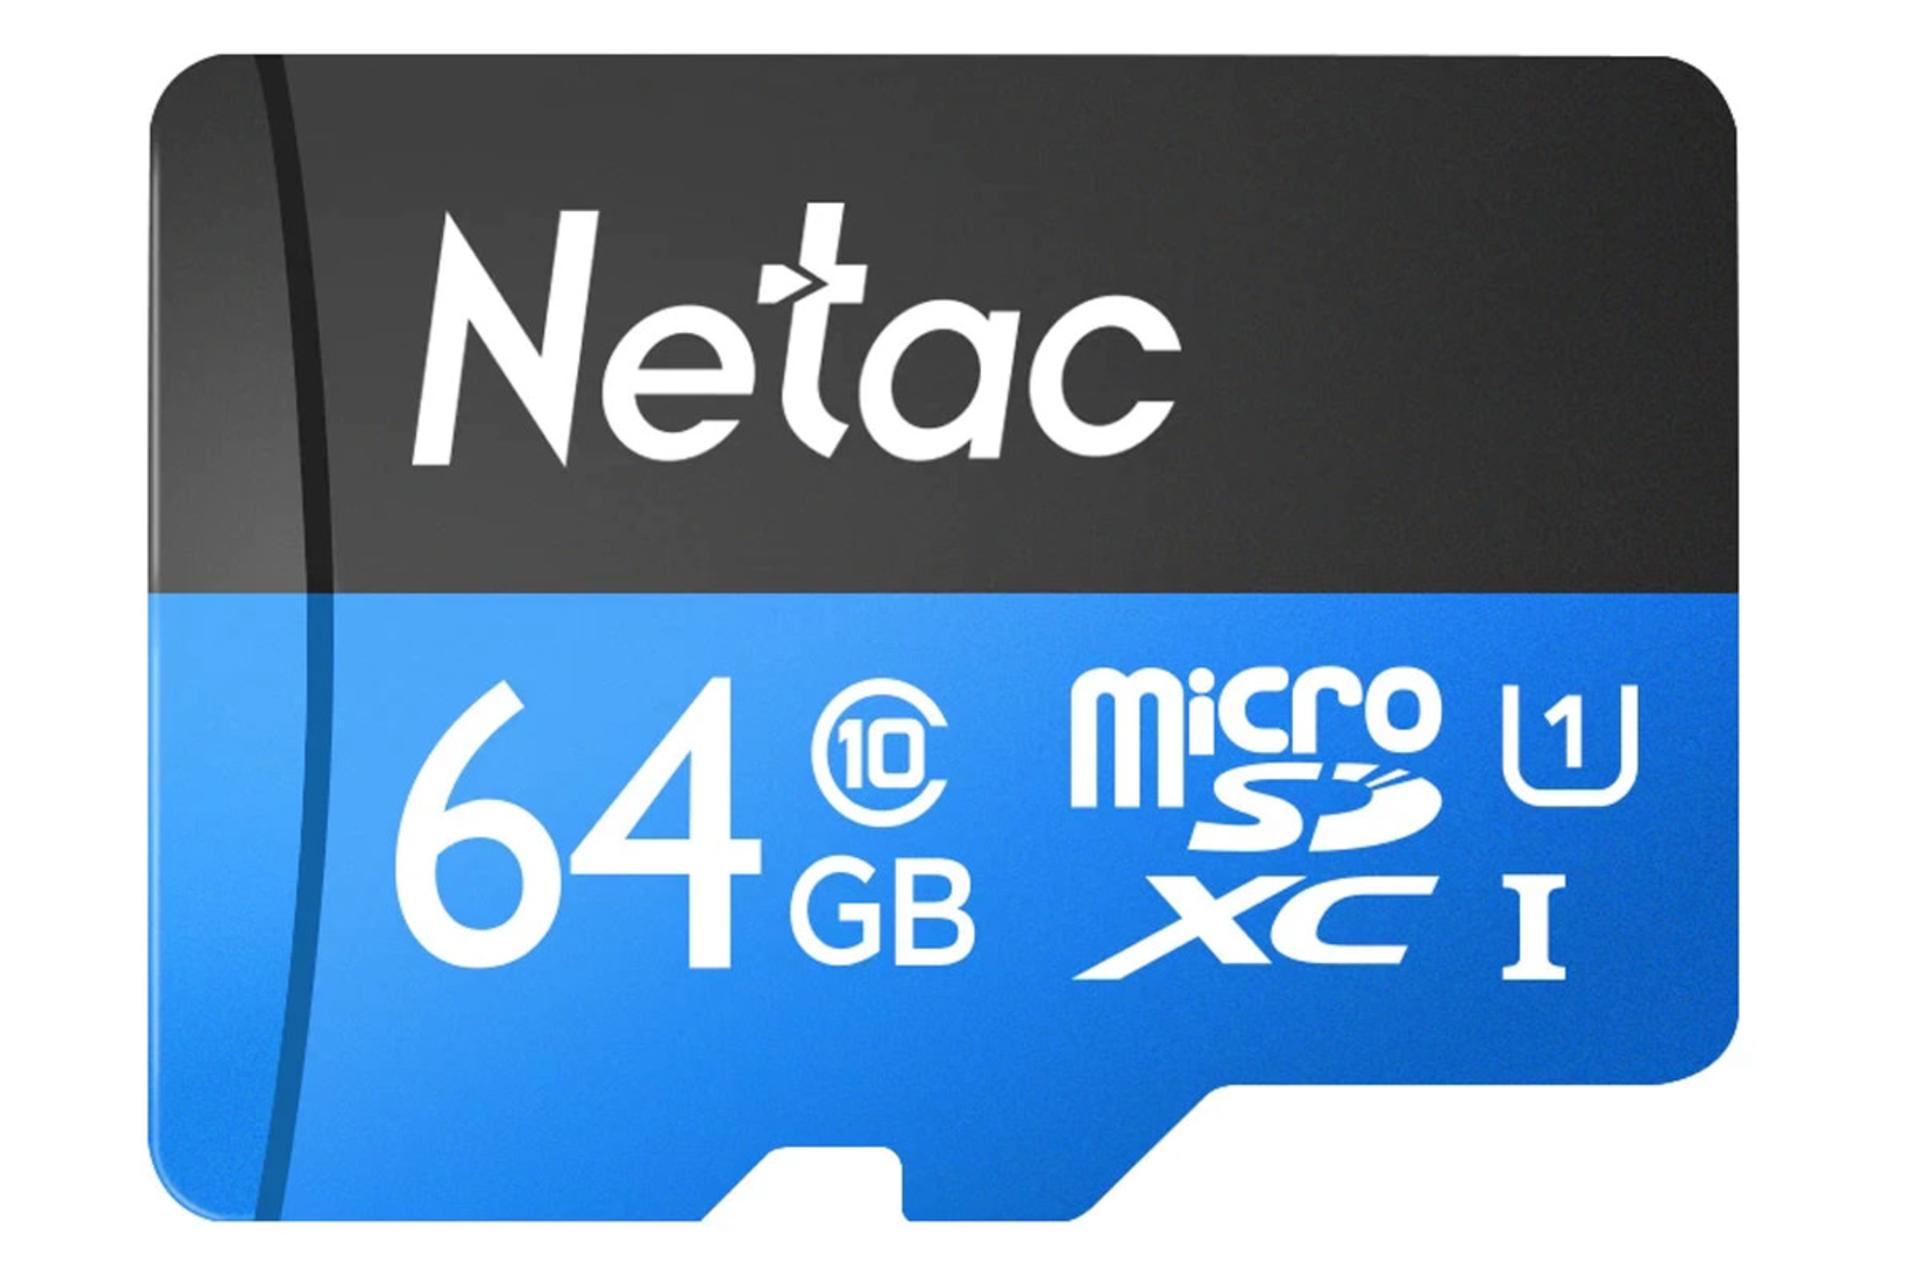 کارت حافظه نتاک microSDXC ظرفیت 64 گیگابایت مدل P500 Standard کلاس 10